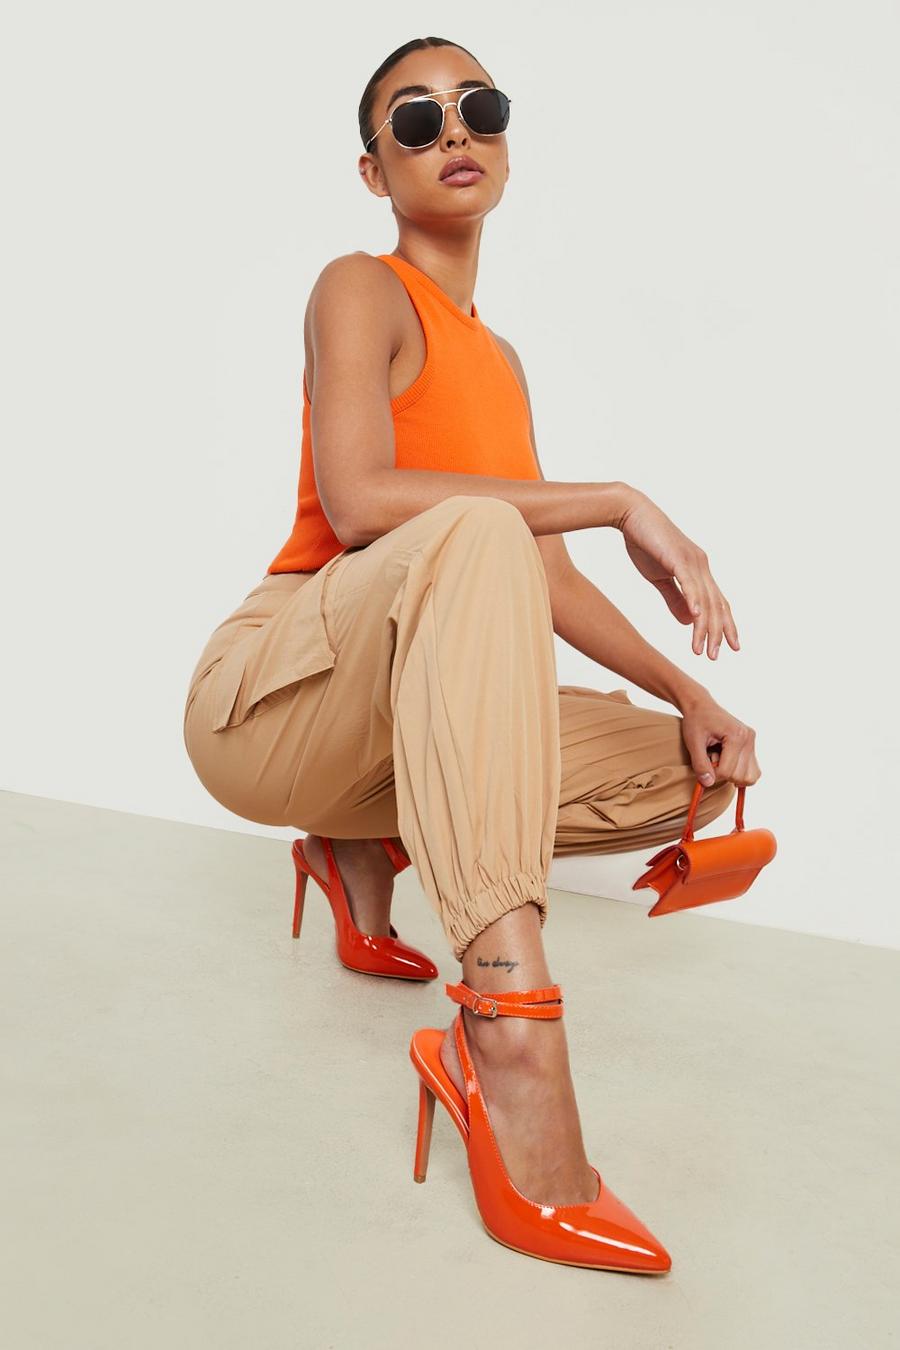 Zapatos de salón con tacón y tiras cruzadas, Orange arancio